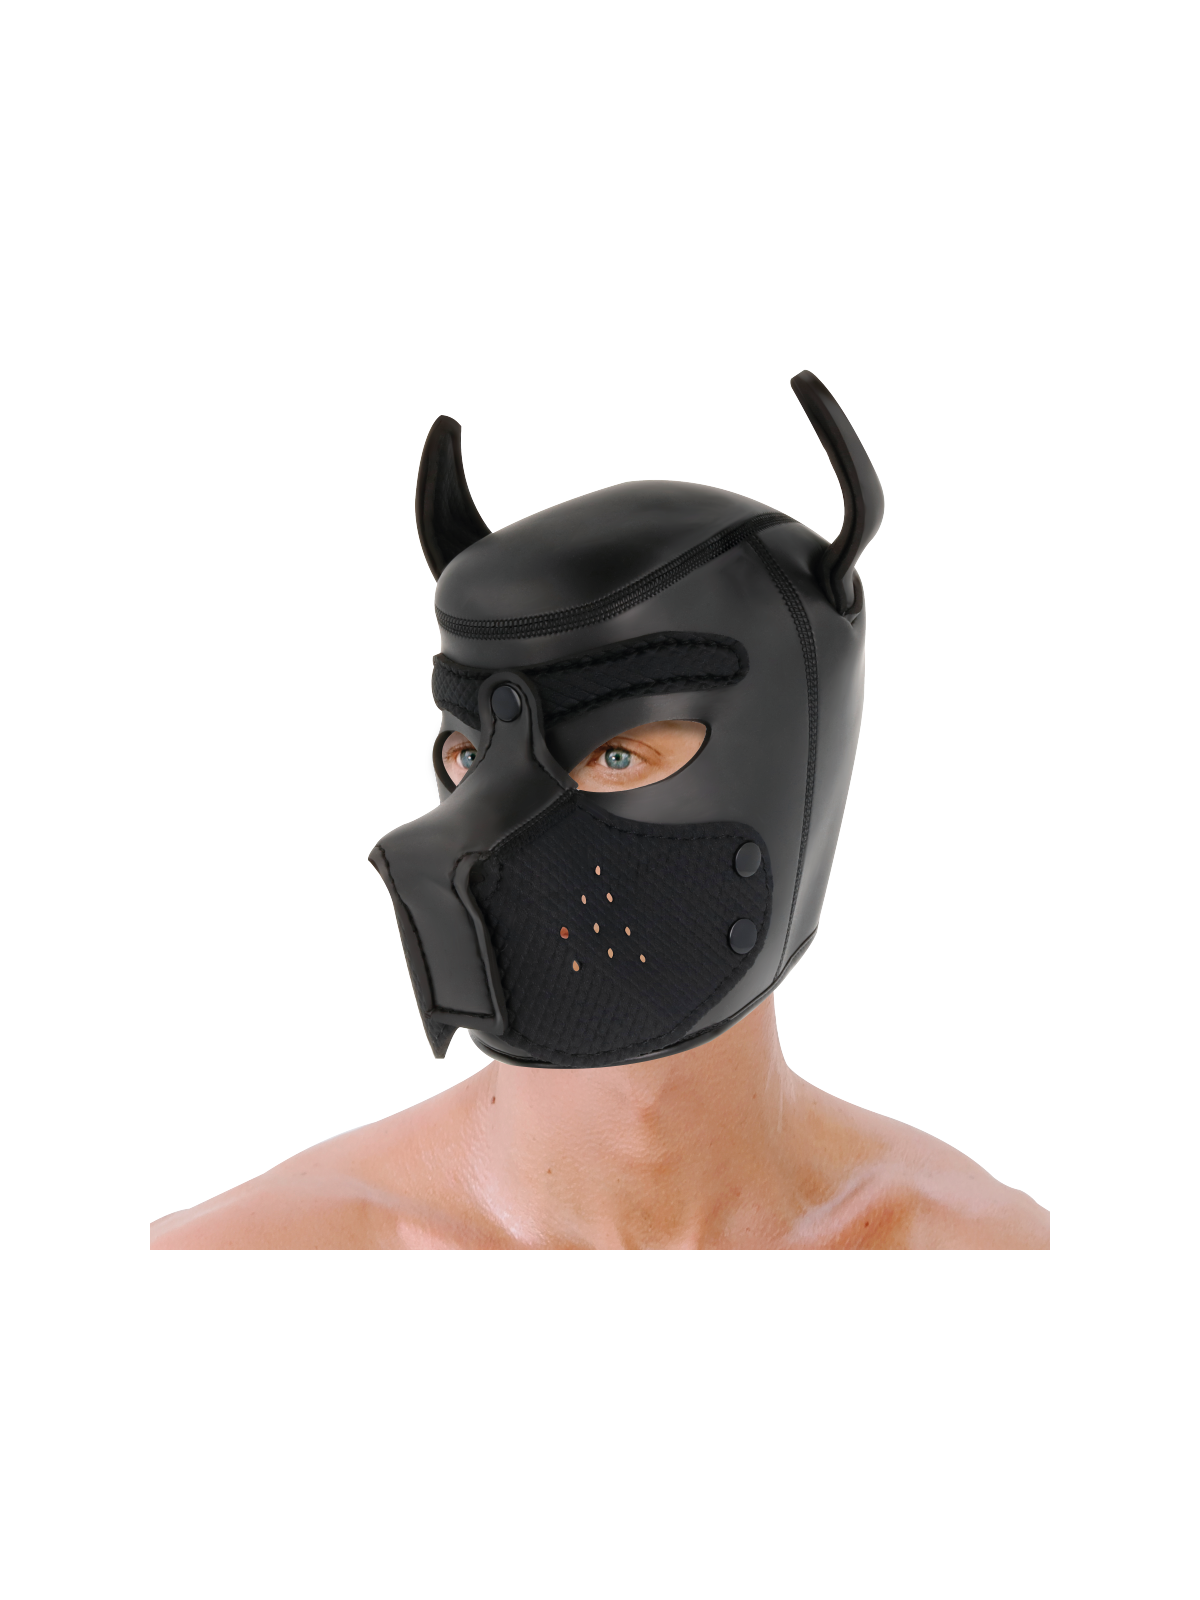 Darkness Máscara Perro De Neopreno Con Hocico Extraíble - Comprar Máscara erótica Darkness - Máscaras eróticas (1)